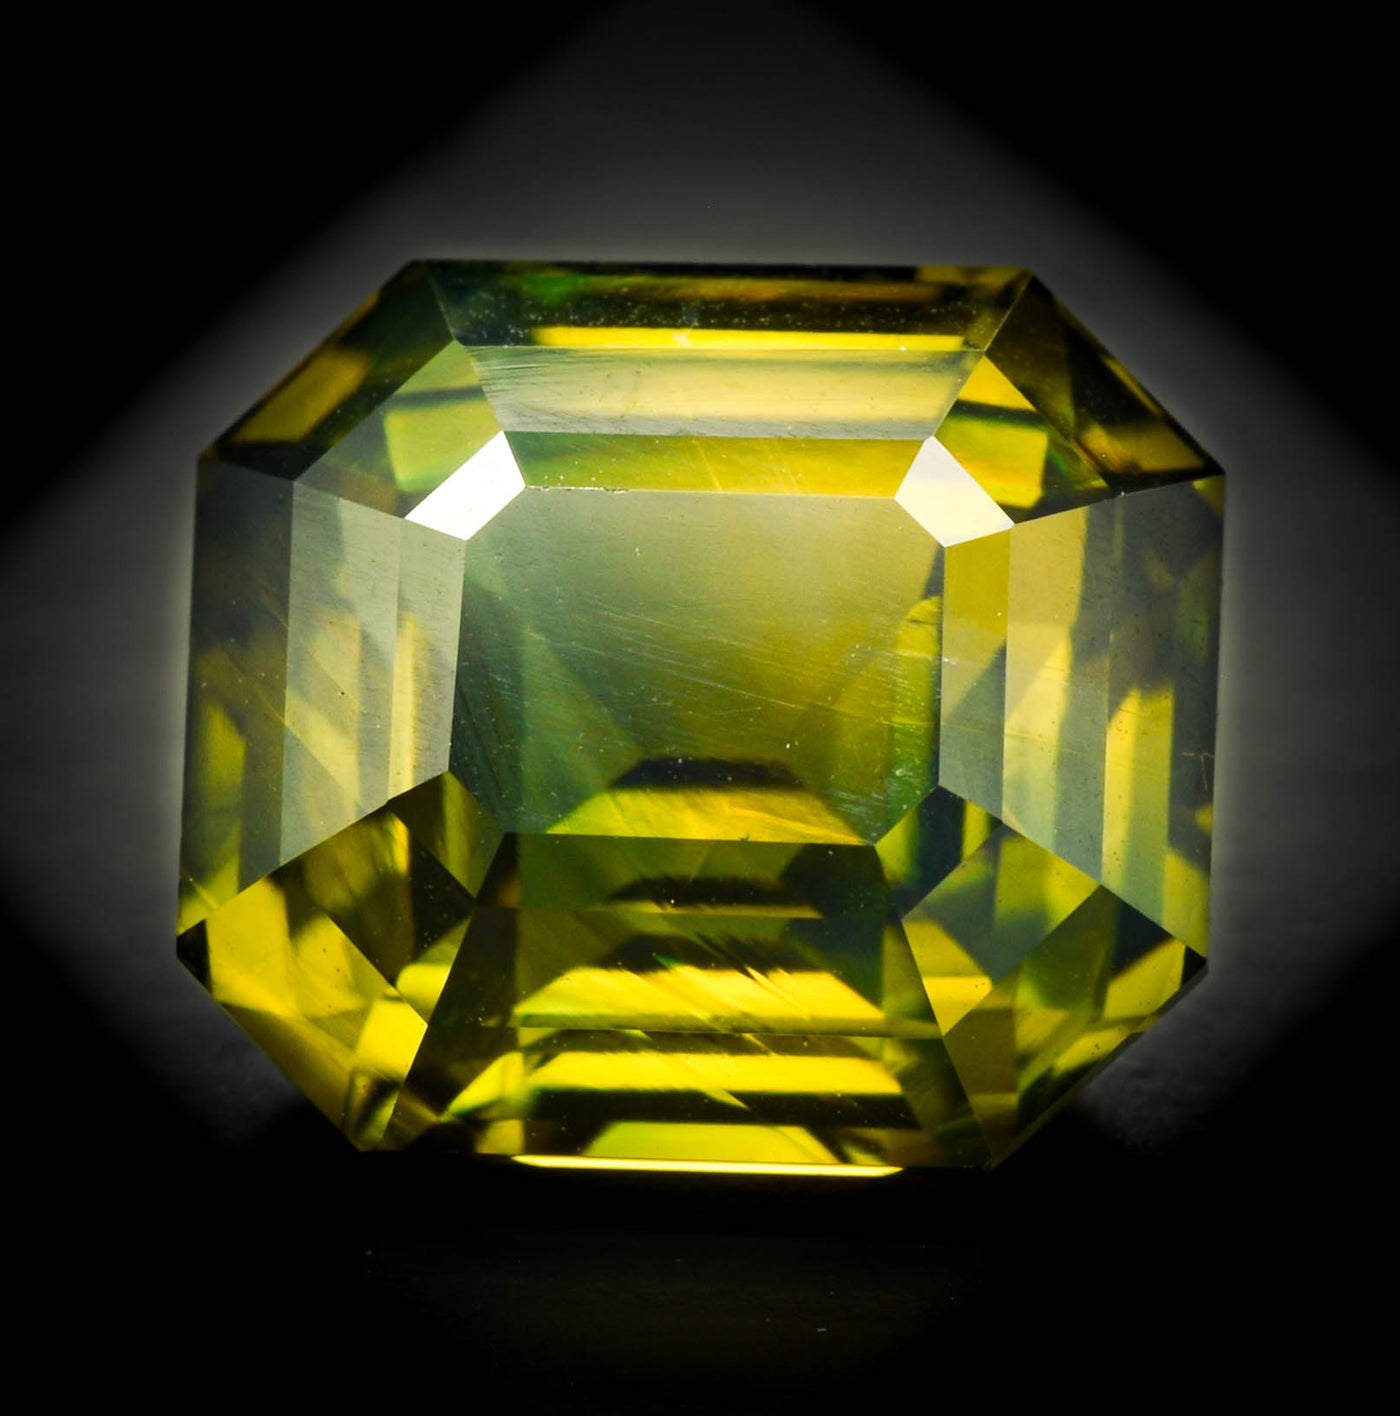 *PRIX SUR DEMANDE* Saphir bicolore jaune-vert 6.70 carats émeraude non chauffé